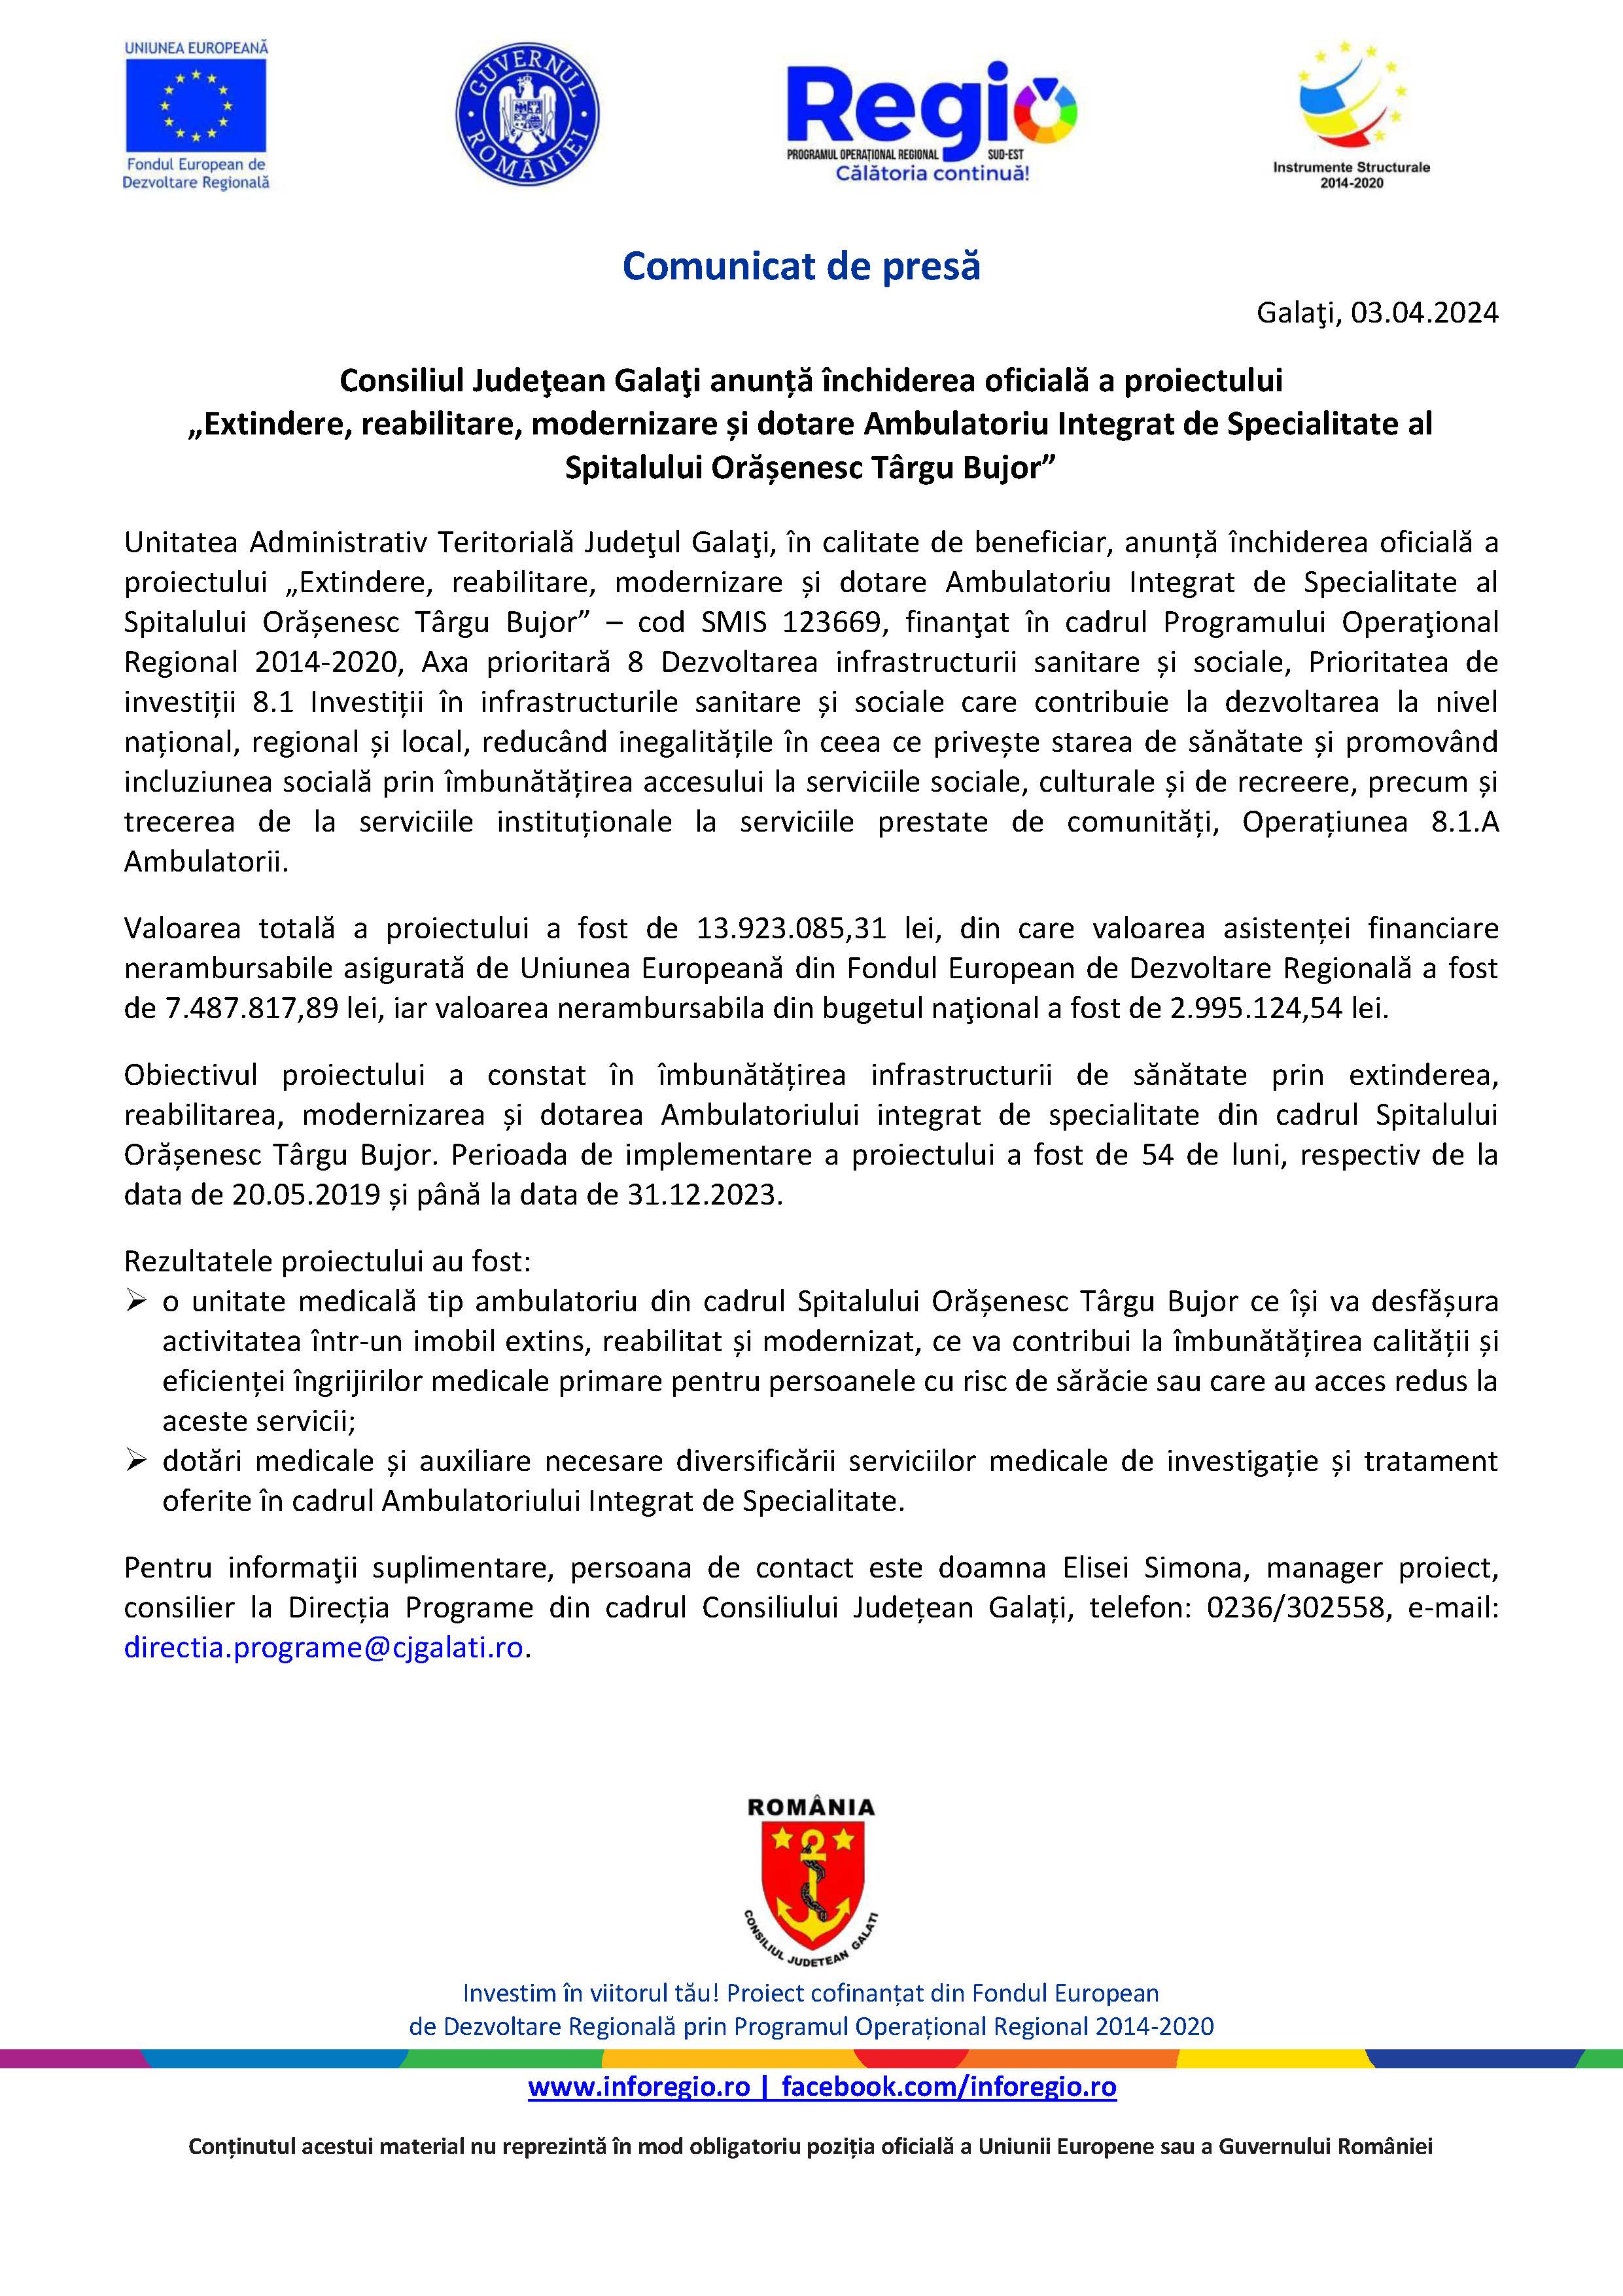 Consiliul Judeţean Galaţi anunță închiderea oficială a proiectului „Extindere, reabilitare, modernizare și dotare Ambulatoriu Integrat de Specialitate al Spitalului Orășenesc Târgu Bujor”